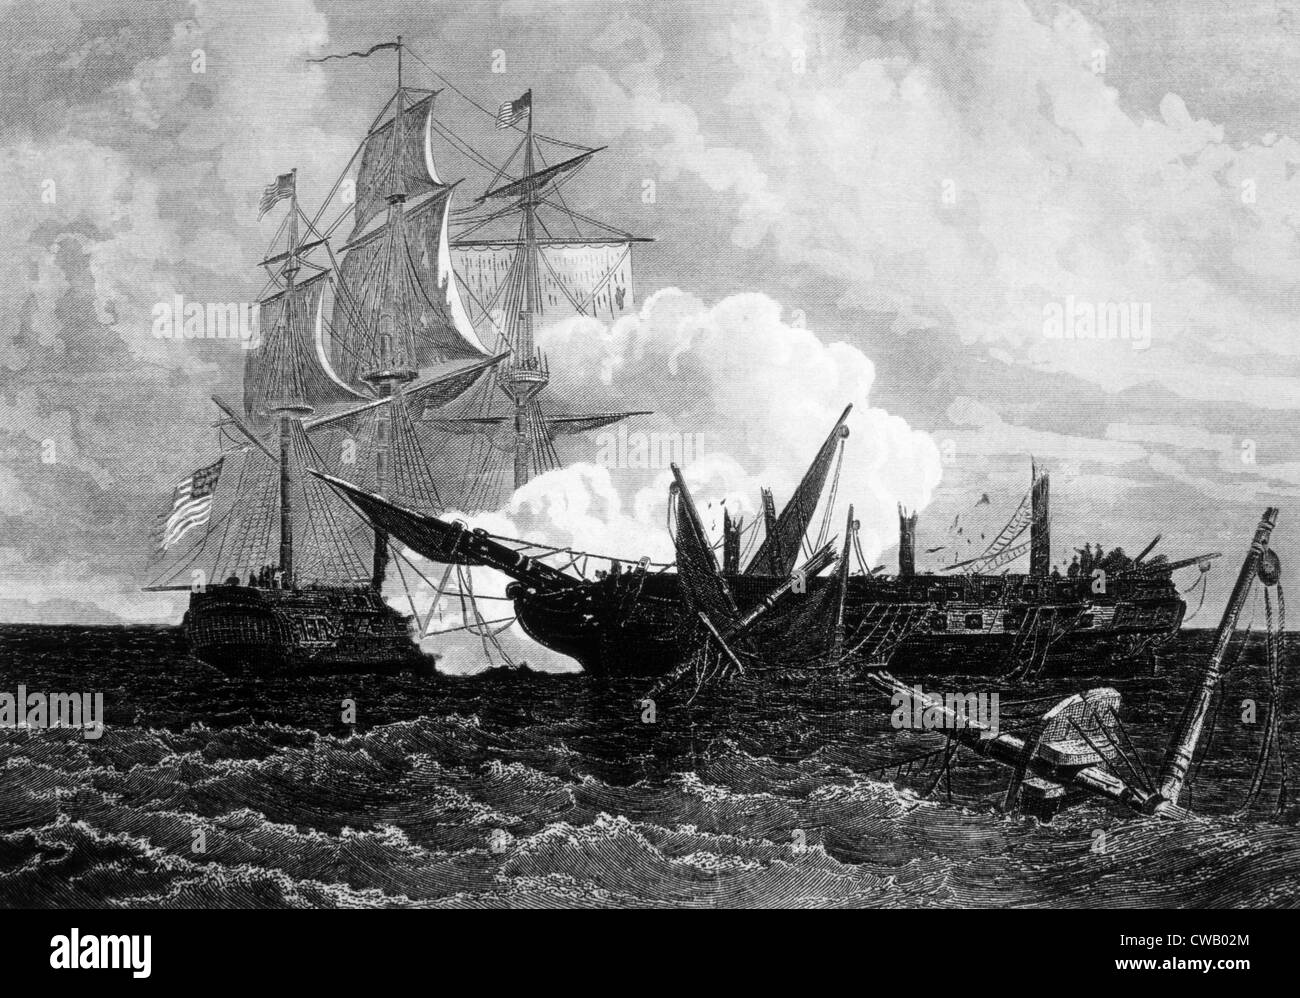 La guerre de 1812, bataille navale dans laquelle frégate américaine Constitution bat le navire de guerre britannique guerrière, le 19 août 1812 Banque D'Images